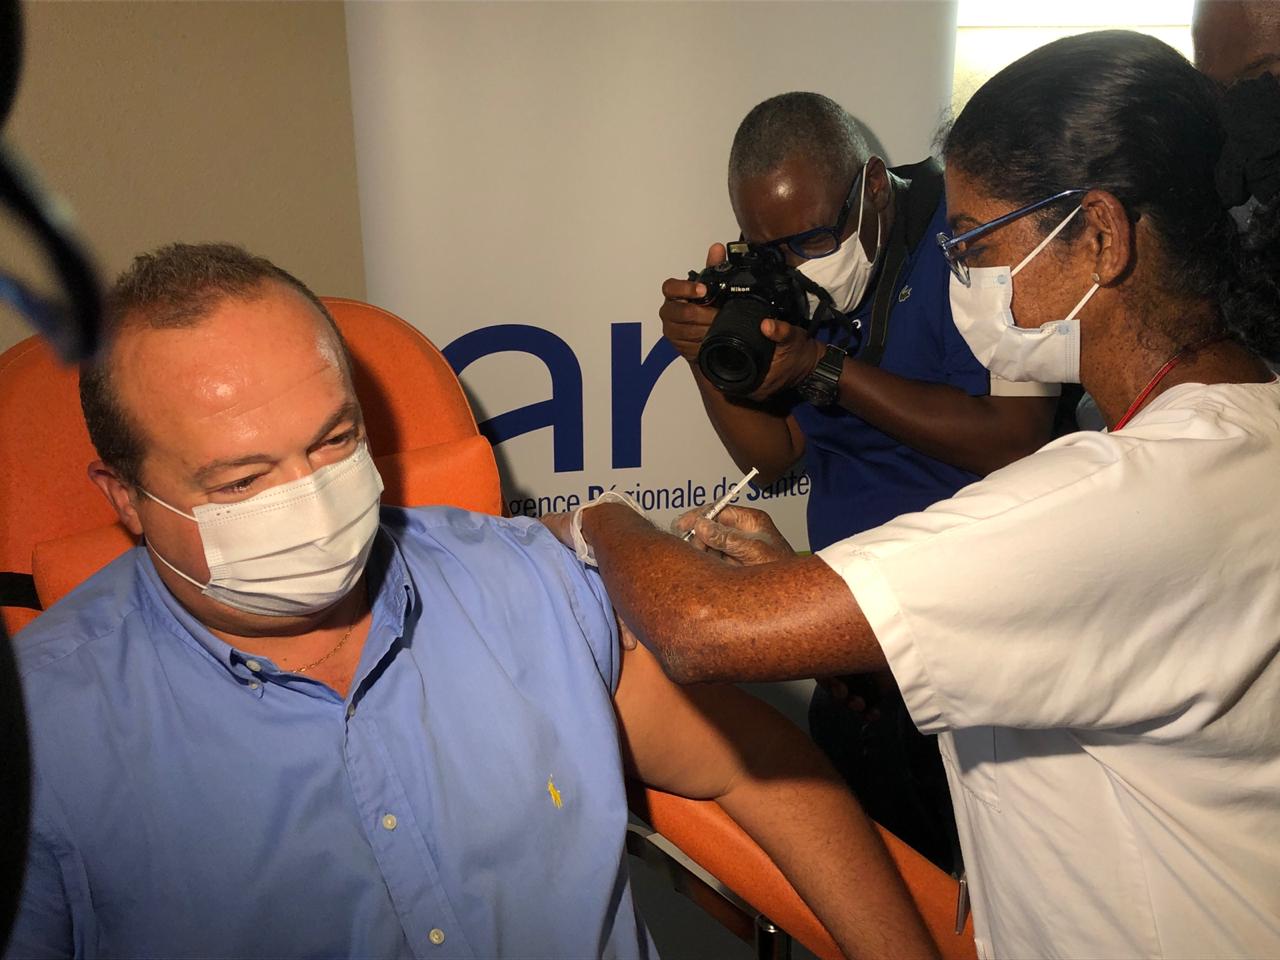     Jérôme Viguier, directeur de l'ARS, est le premier vacciné de Martinique

